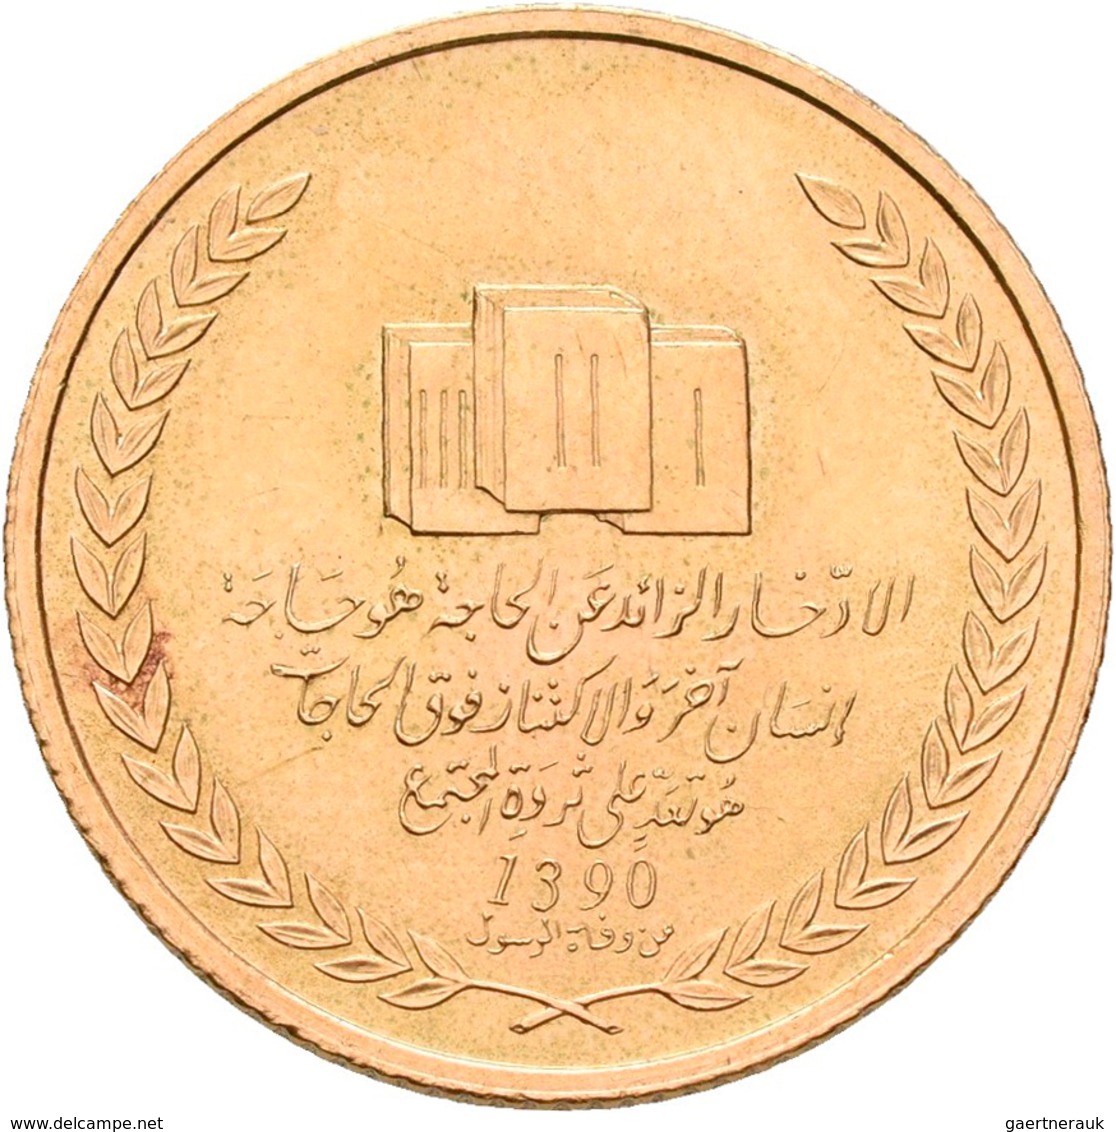 Medaillen Alle Welt: Libyen: Goldmedaille AH 1390 (1970) Muammar Abu Minyar Al Gaddafi, Unsigniert. - Non Classificati